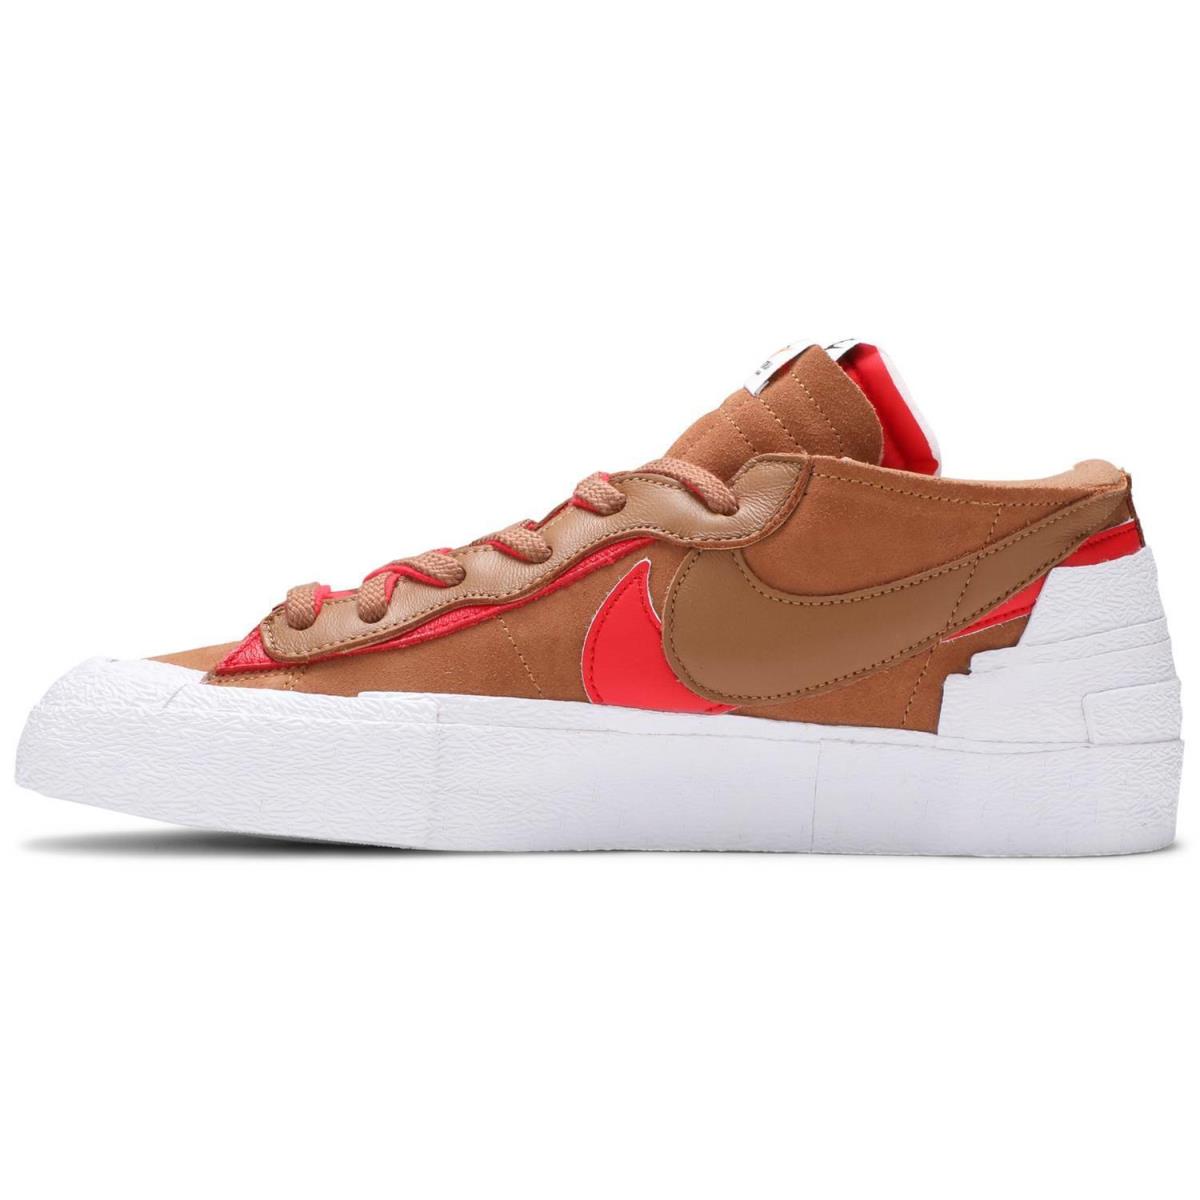 Nike Men`s Blazer Low Sacai Tan Red DD1877 200 Fashion Shoes - Tan